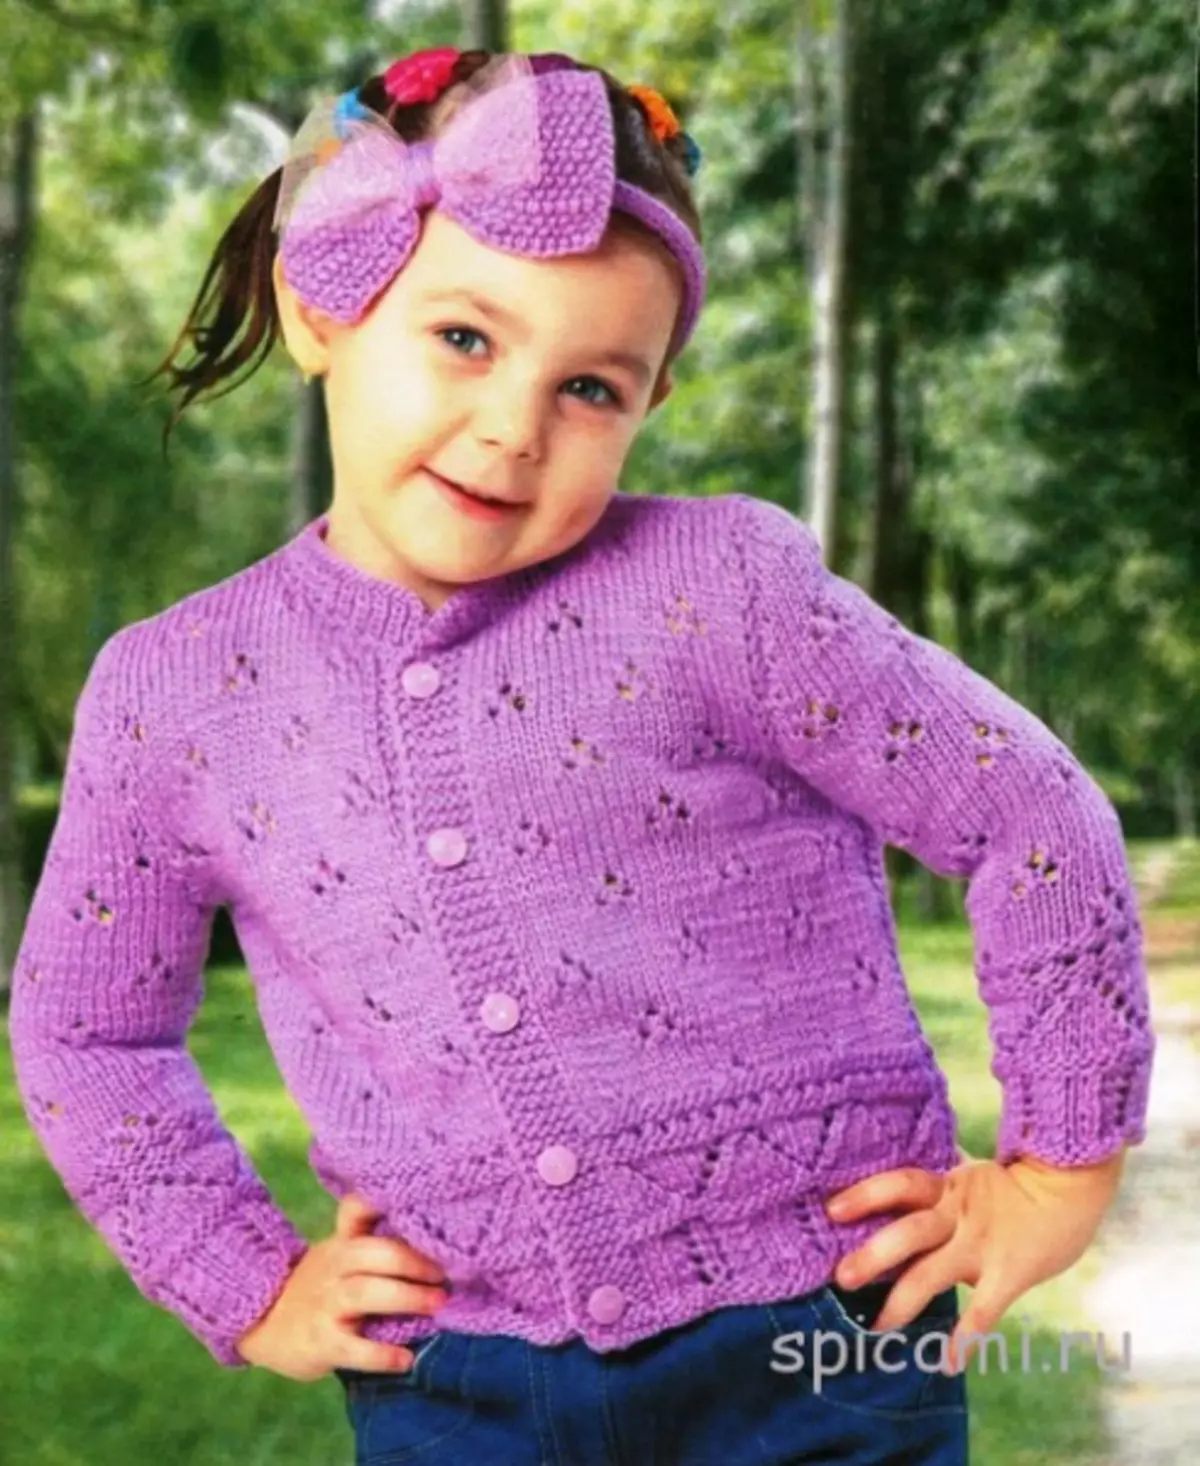 เสื้อกันหนาวถักสำหรับเด็กผู้หญิงที่มีเข็มถัก: ตัวเลือกสำหรับสาว 2 ปีเสื้อฉลุทำมันเอง